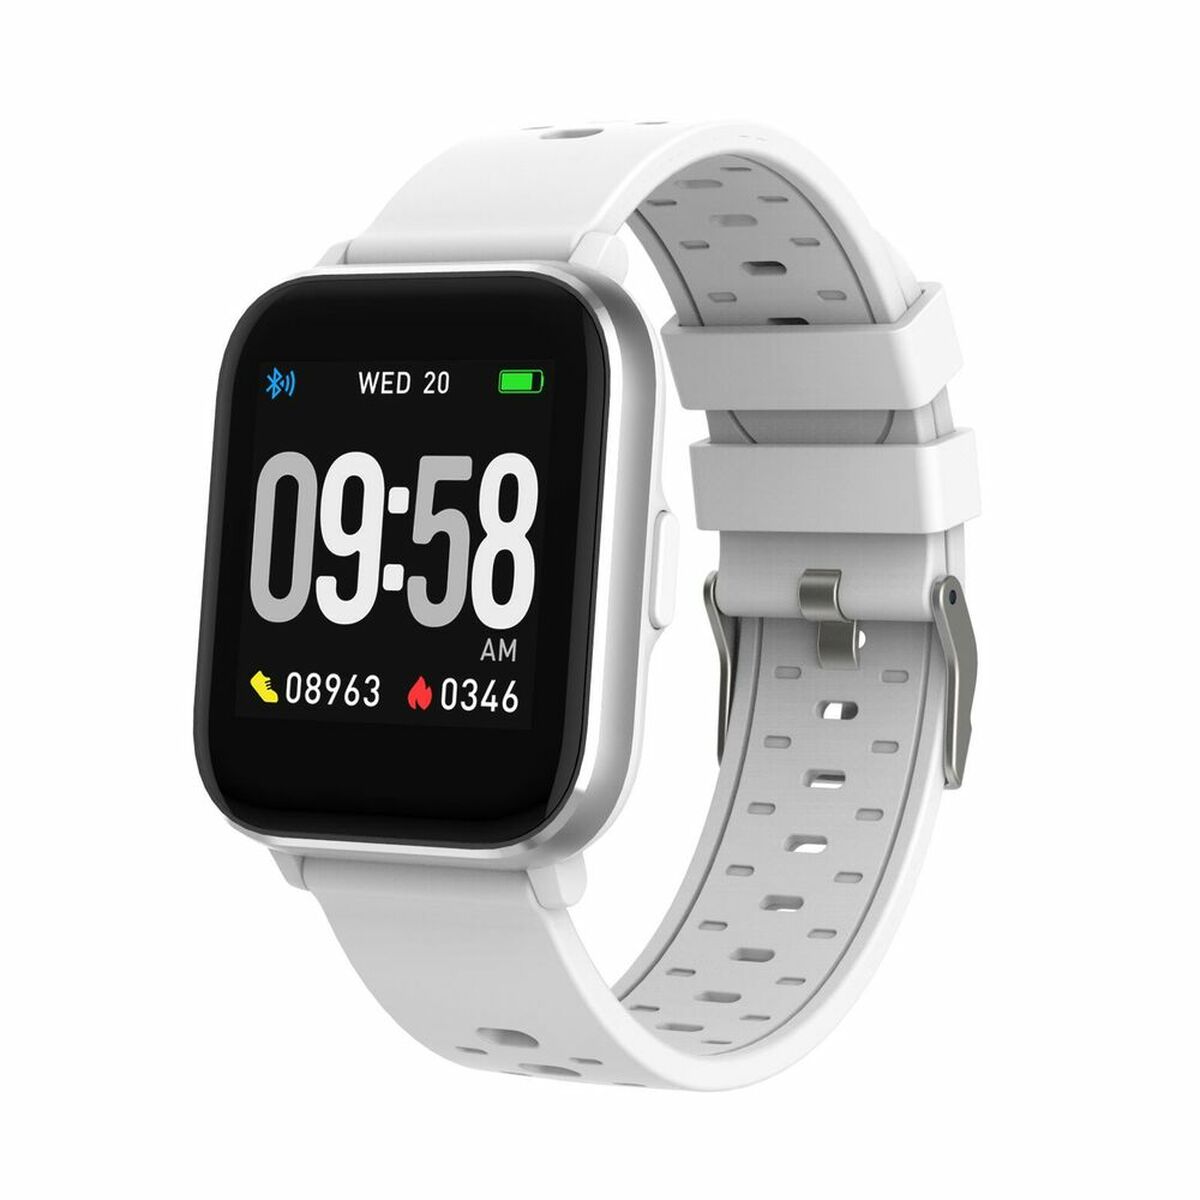 Kaufe Smartwatch Denver Electronics SW-164 180 mAh 1,4" bei AWK Flagship um € 54.00